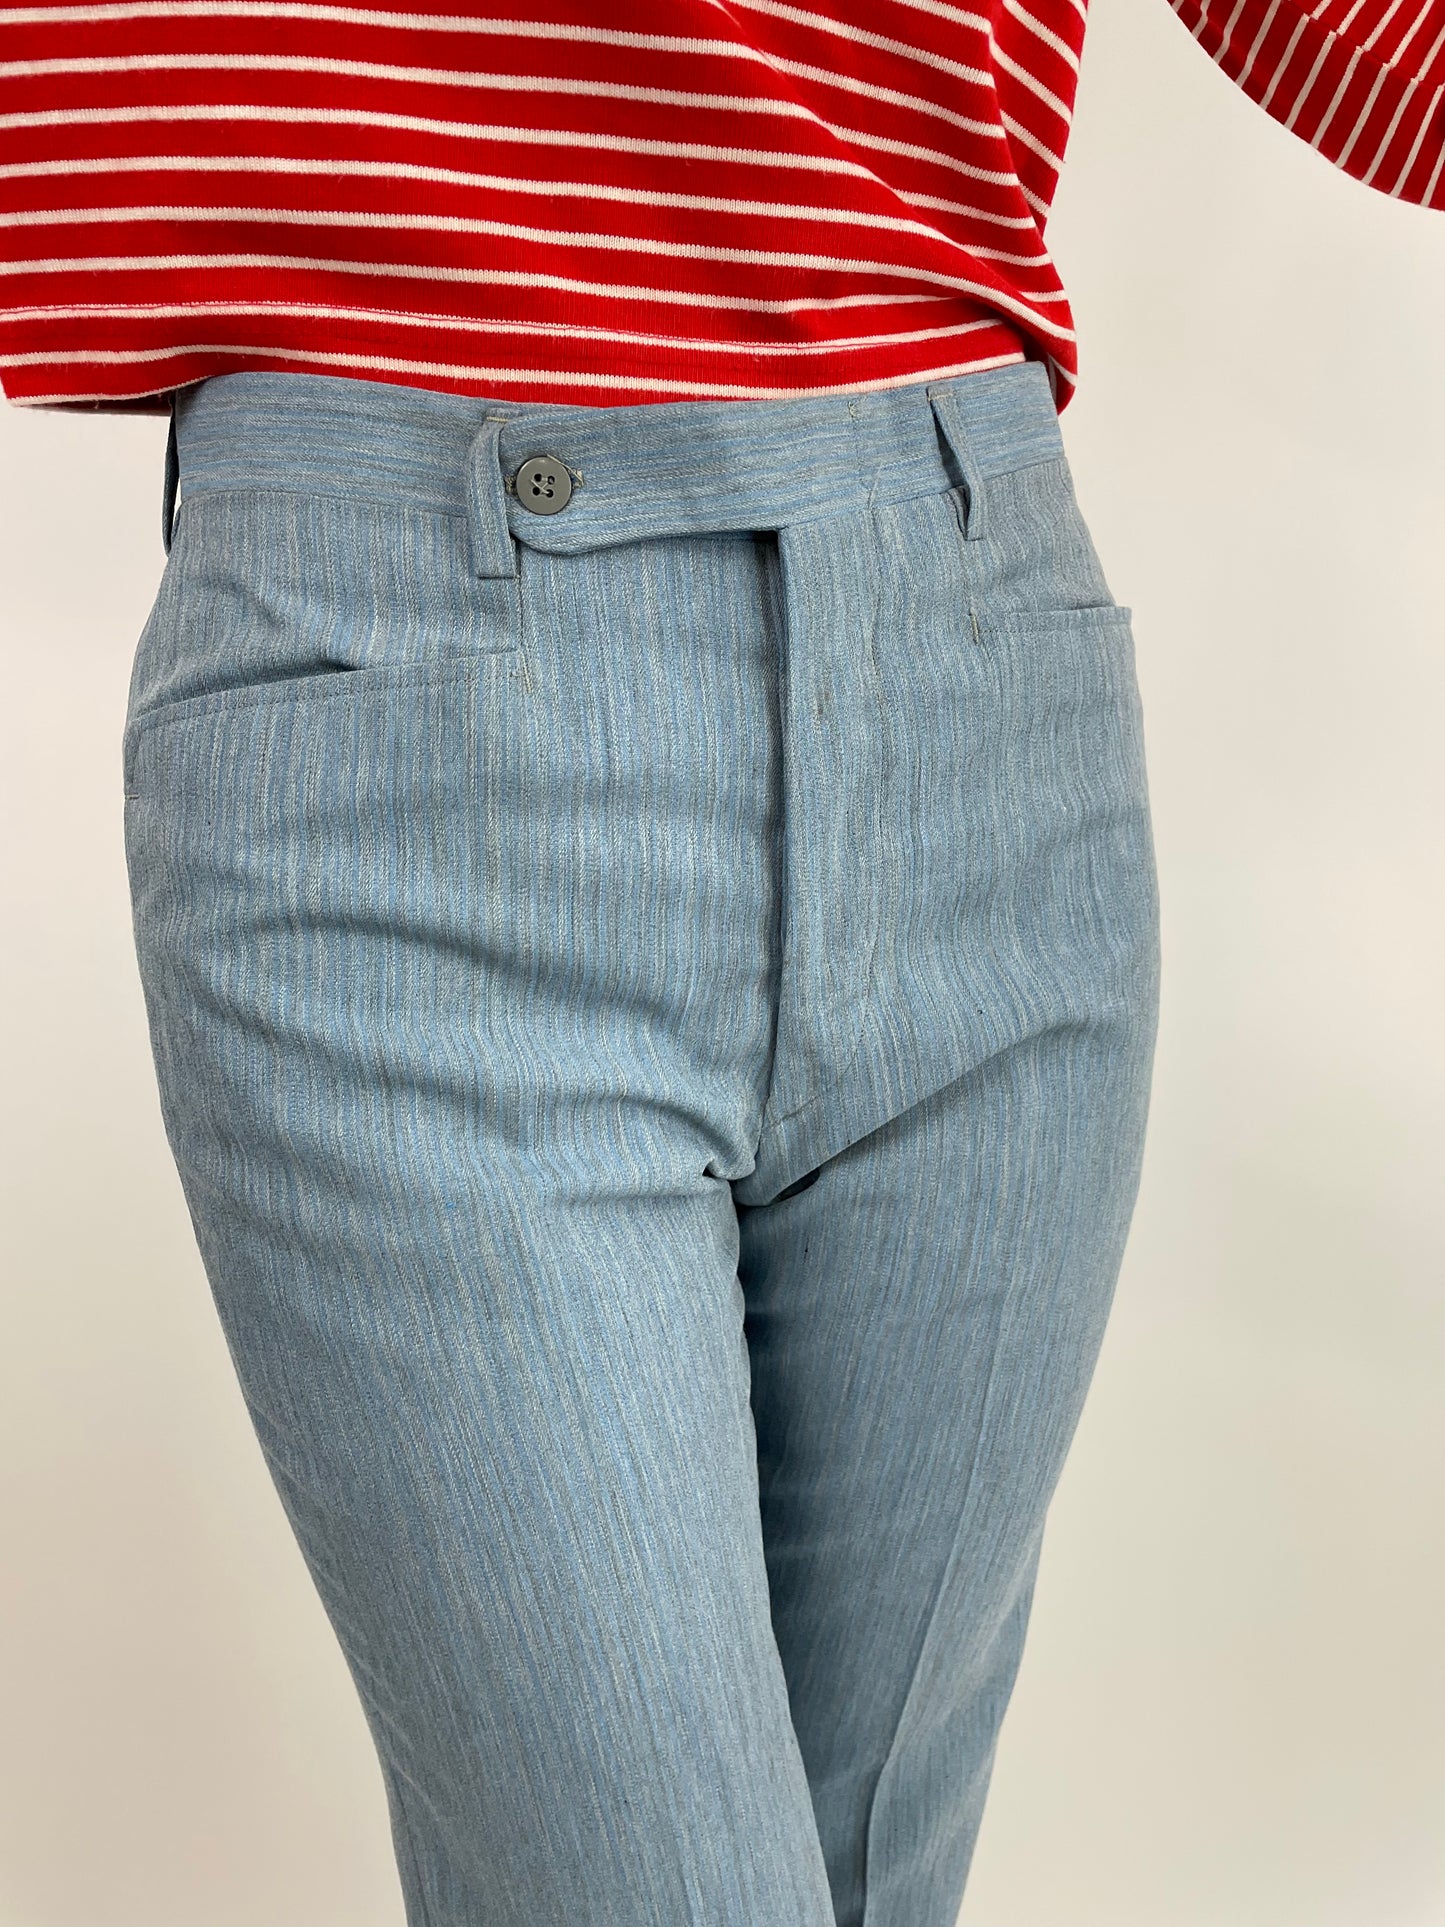 pantalone-anni-80-classico-da-donna-colore-celeste